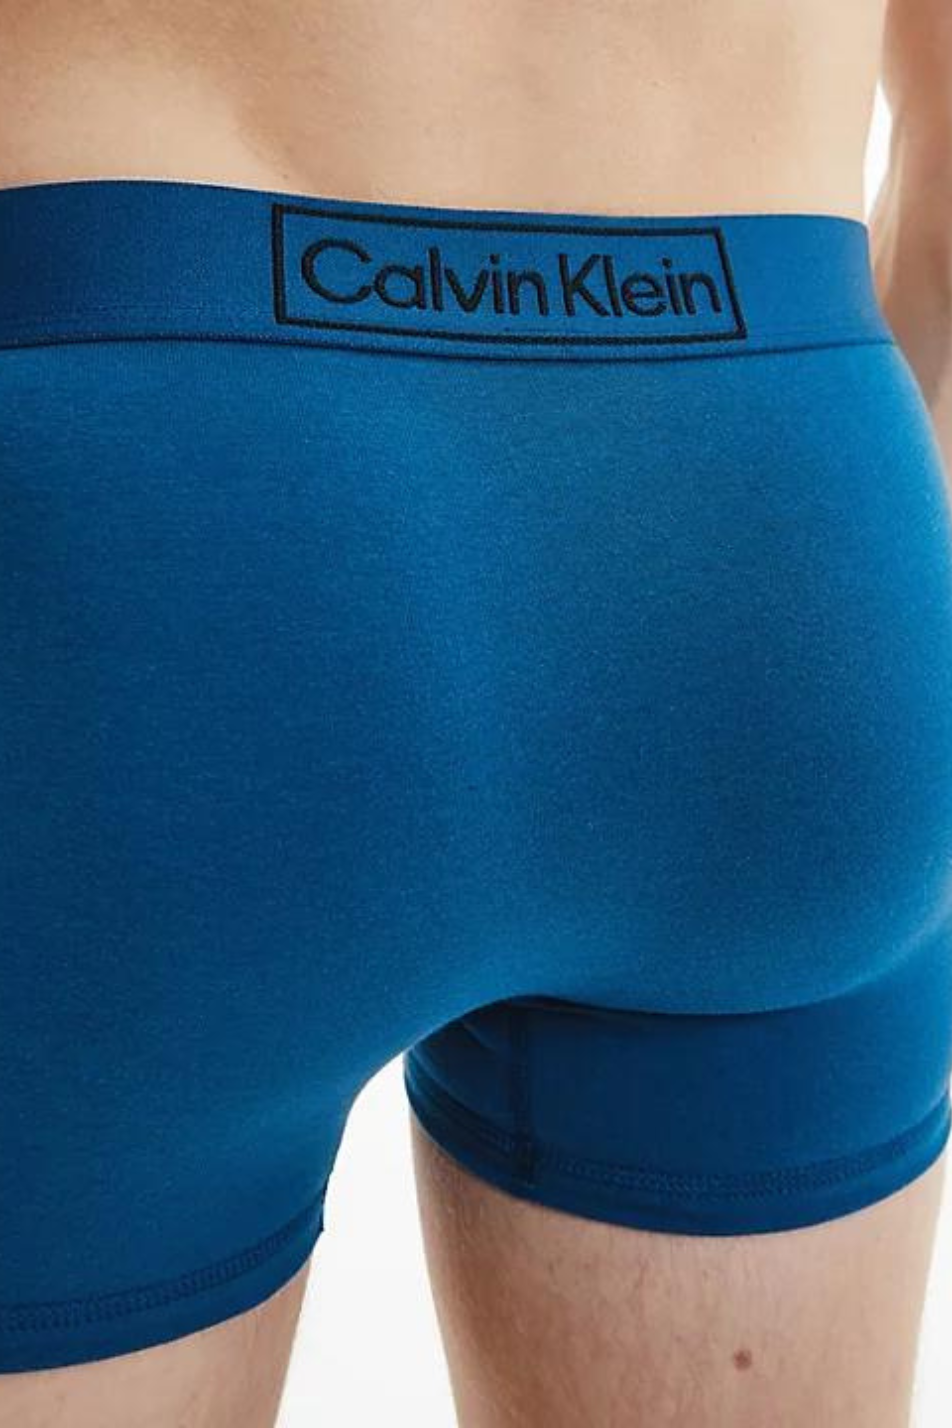 Calvin Klein Men's Reimagined Heritage Trunk